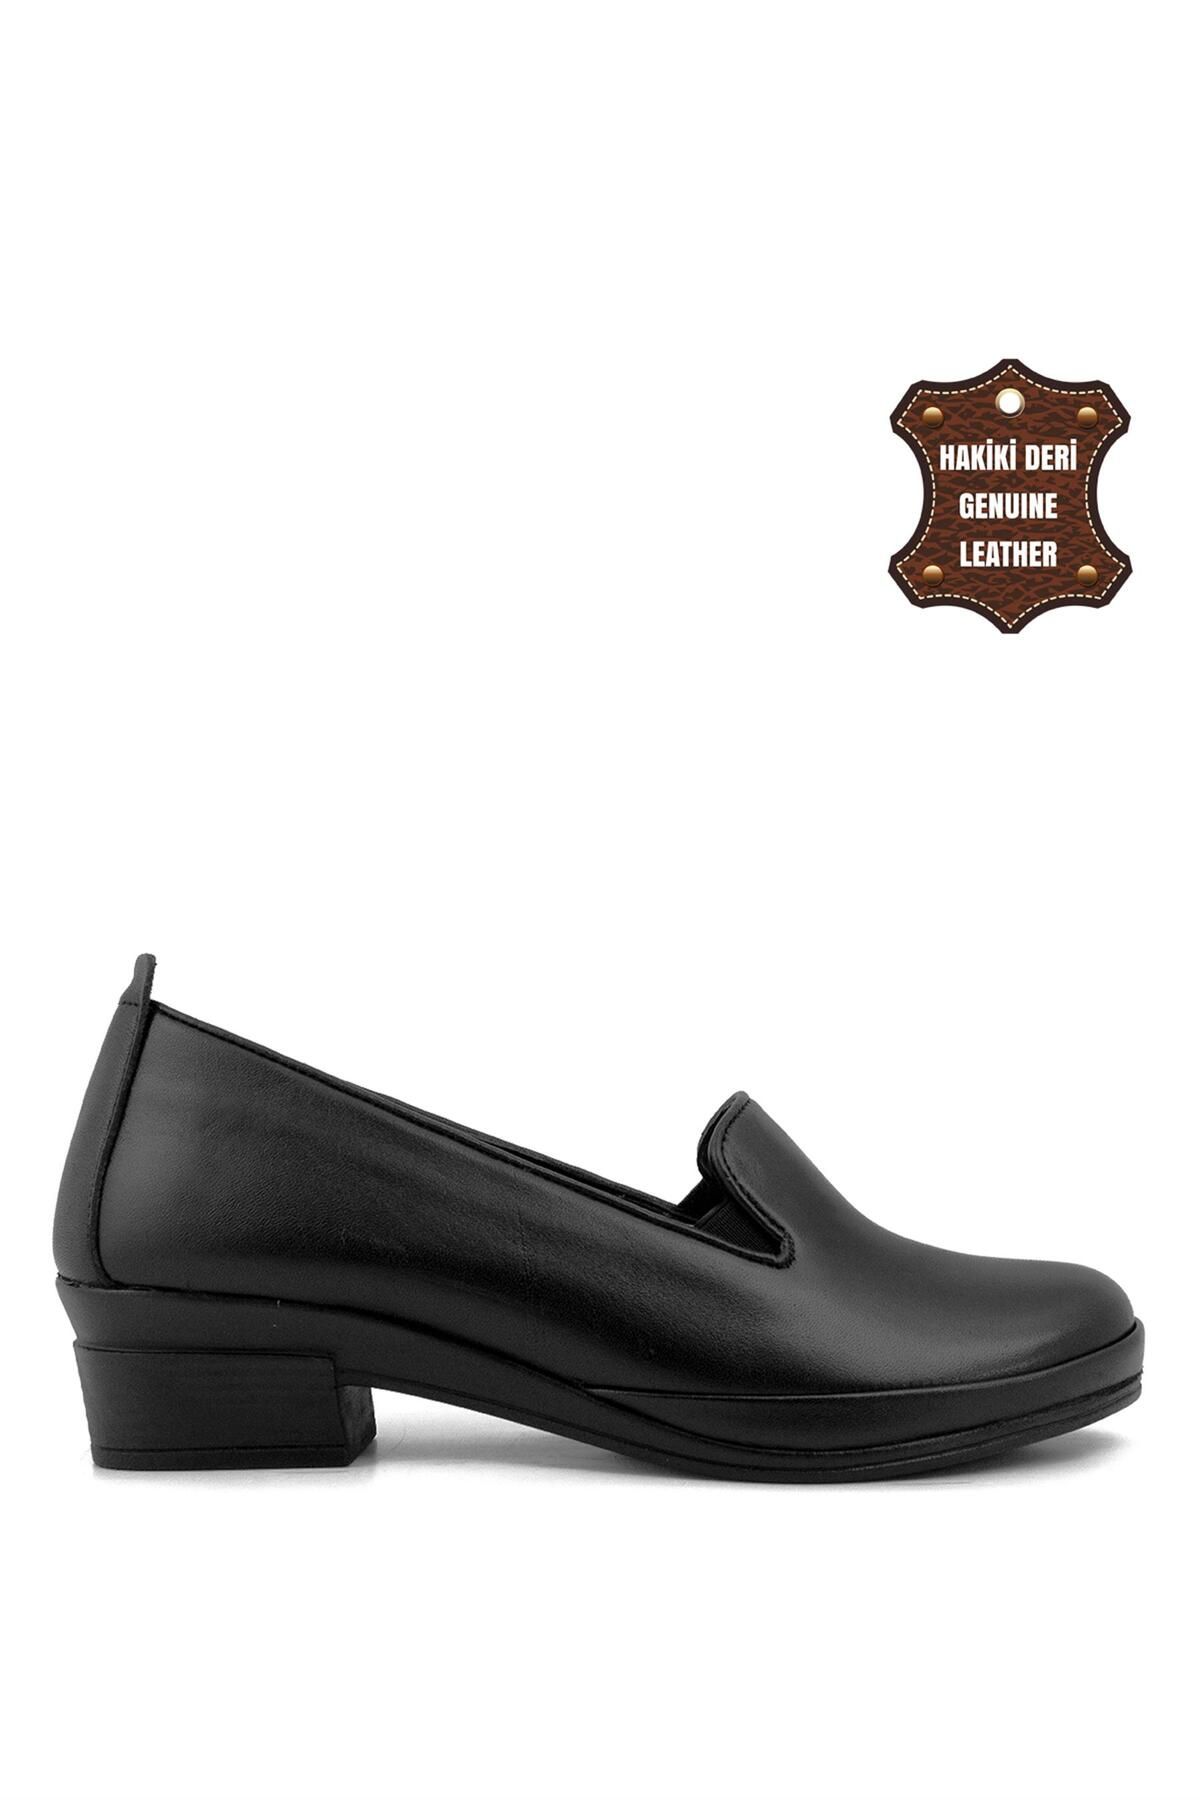 Scavia 082C Kadın Deri KlasikTopuklu Ayakkabı Siyah